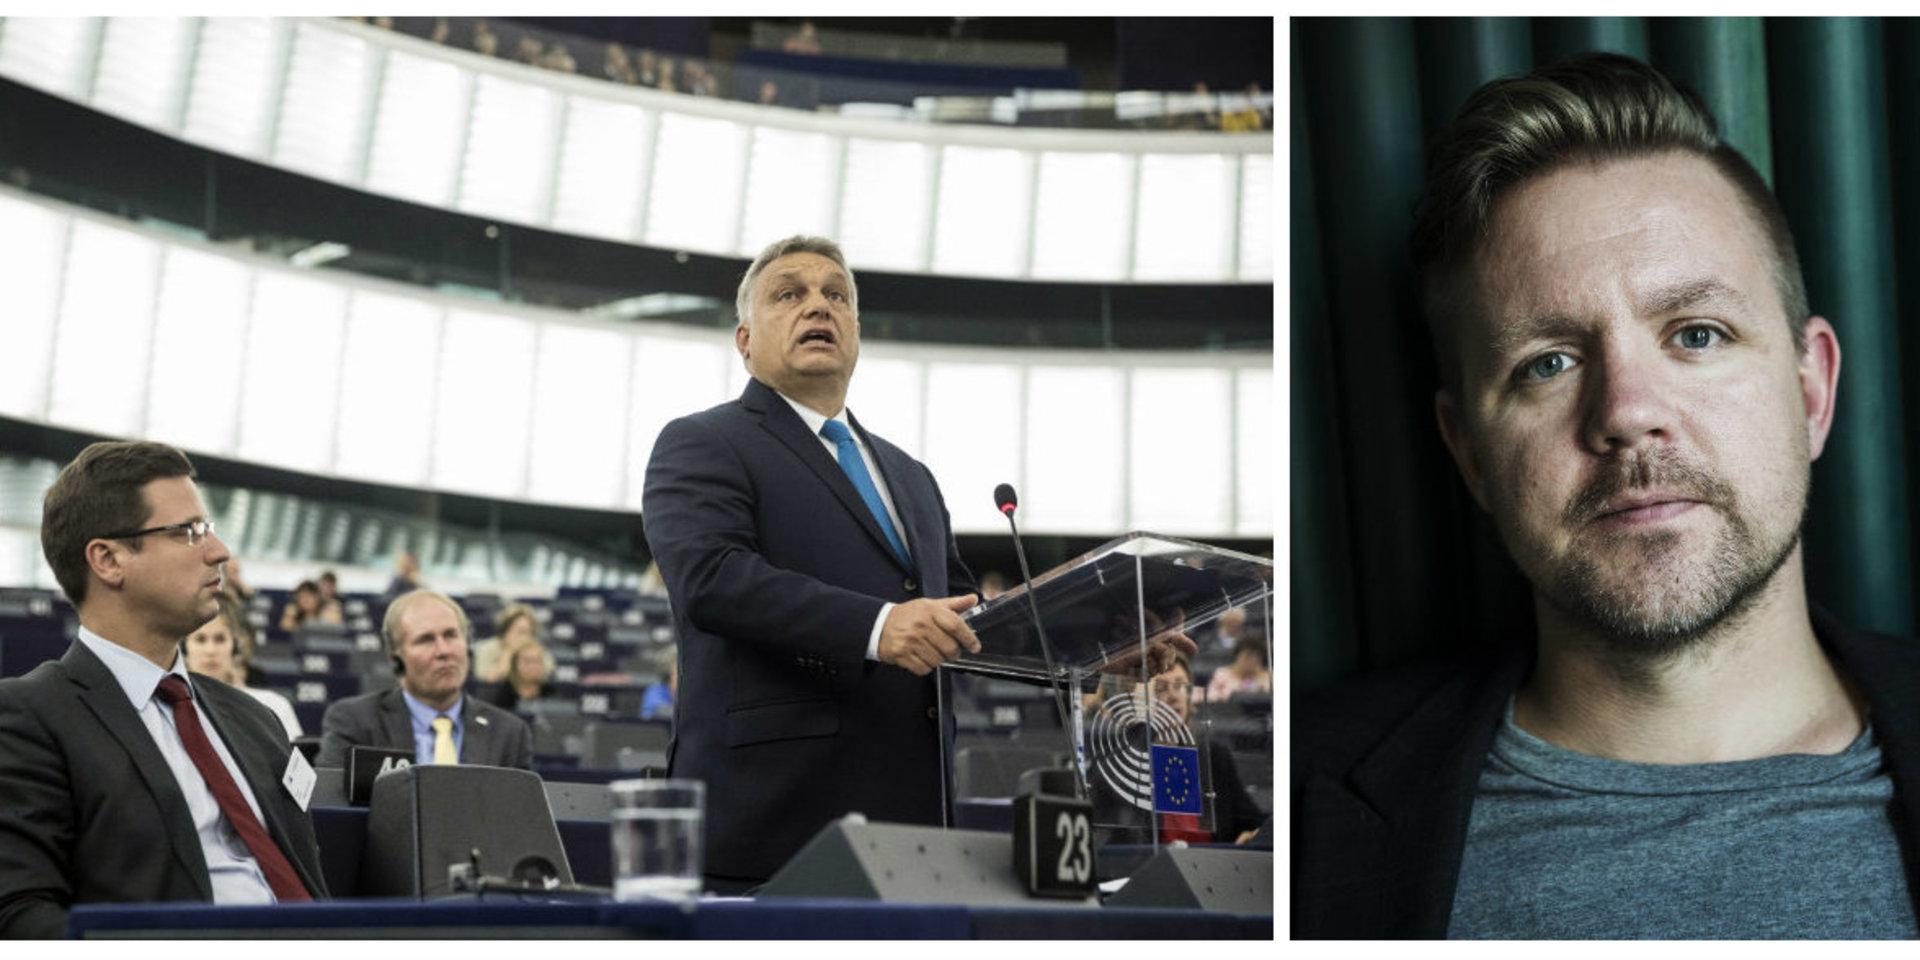 Maktfullkomlig. I Viktor Orbáns Ungern försämras demokratin och rättssäkerheten. 